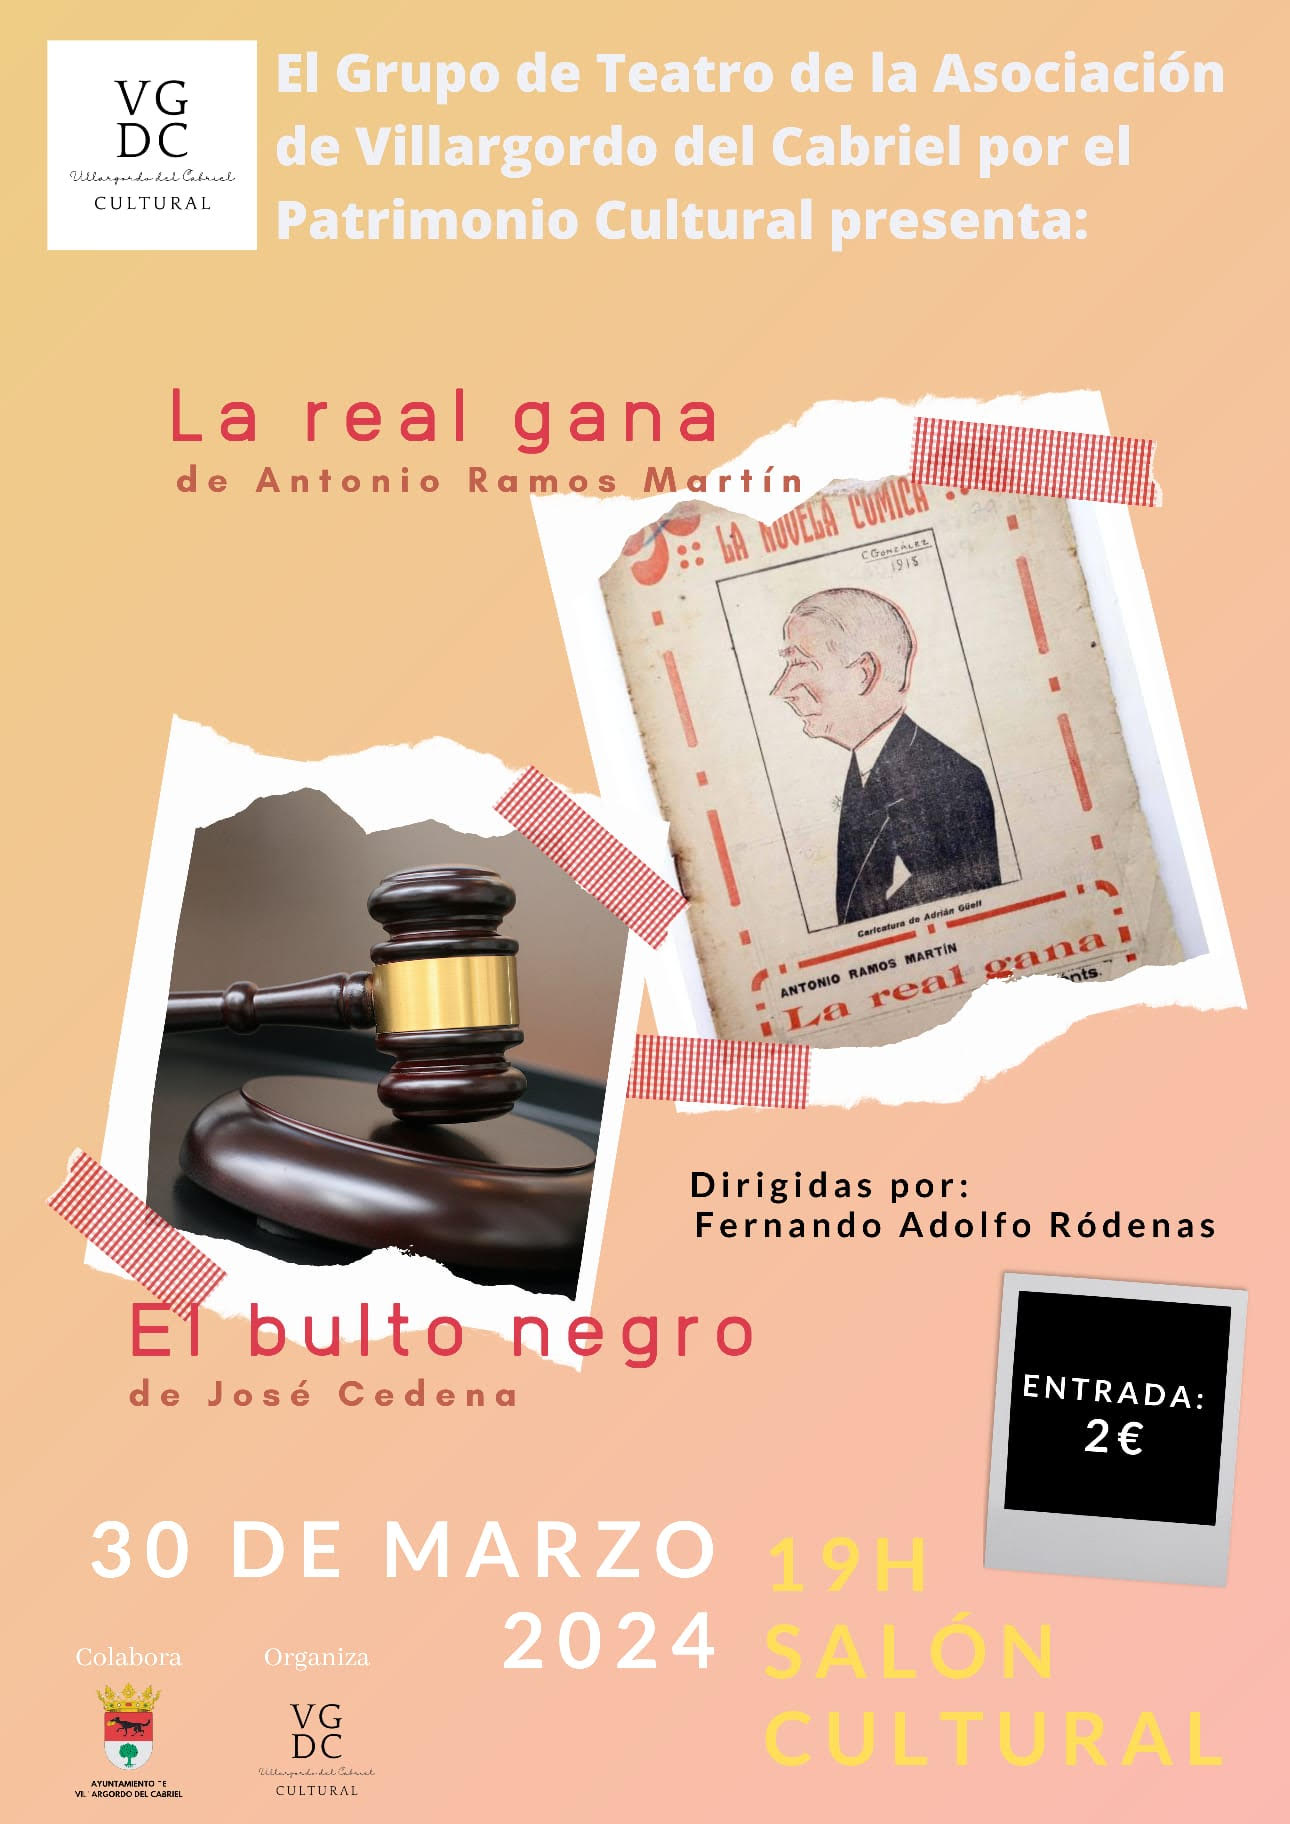 La Asociación de Villargordo del Cabriel por el Patrimonio Cultural nos ofrecerá dos representaciones el próximo 30 de Marzo